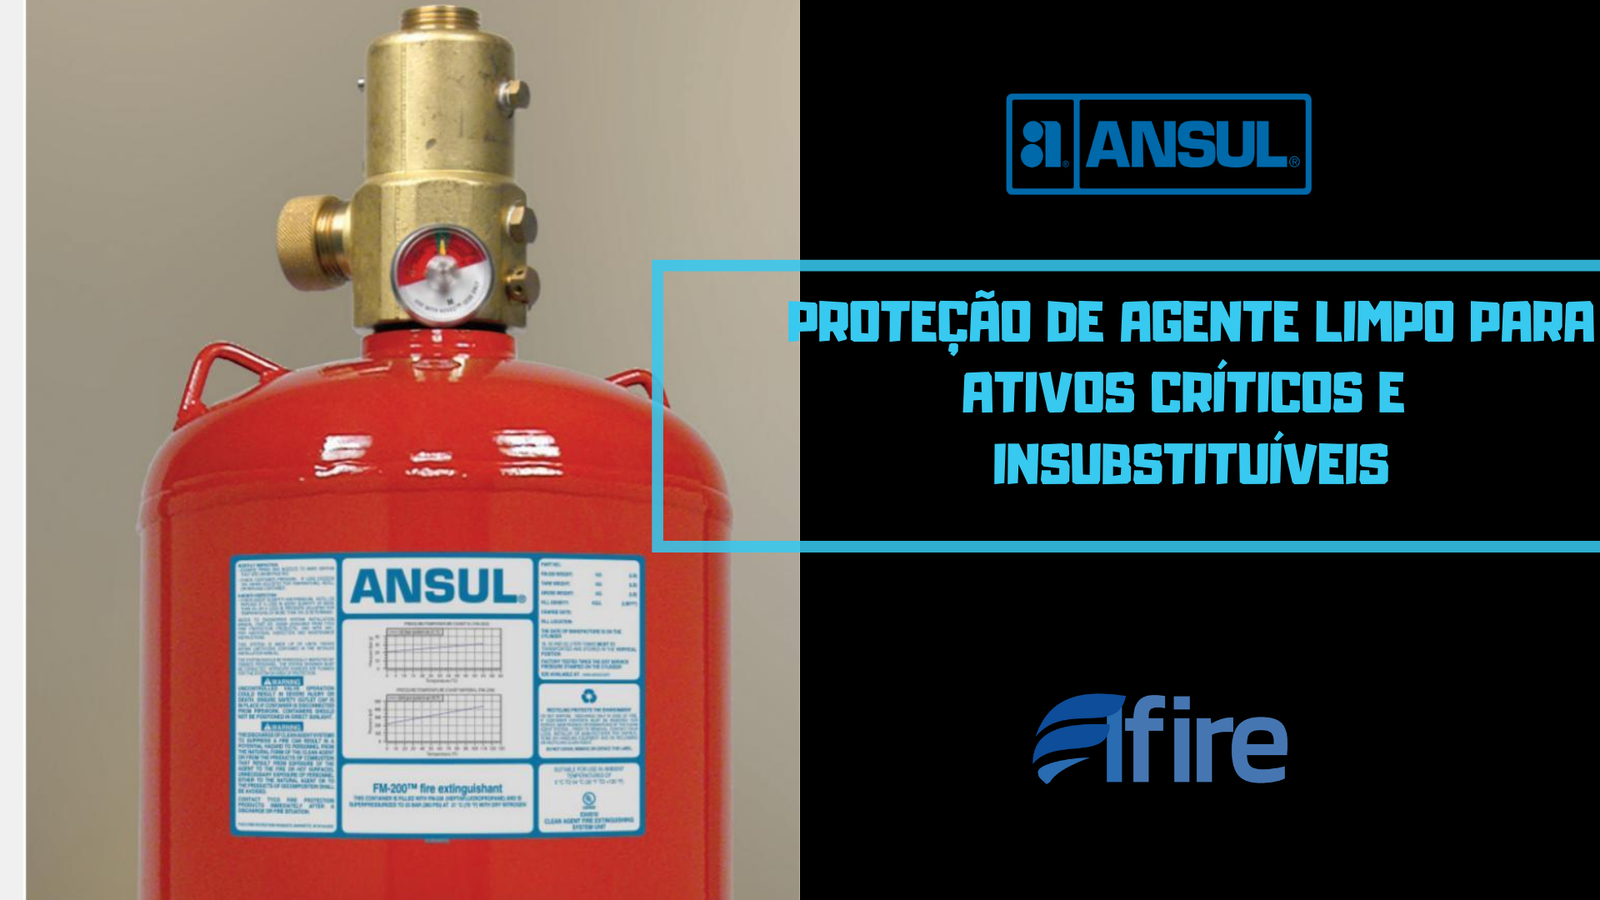 ilustração de uma extintor de incendio, no lado direito titulo do conteúdo com o logo elfire